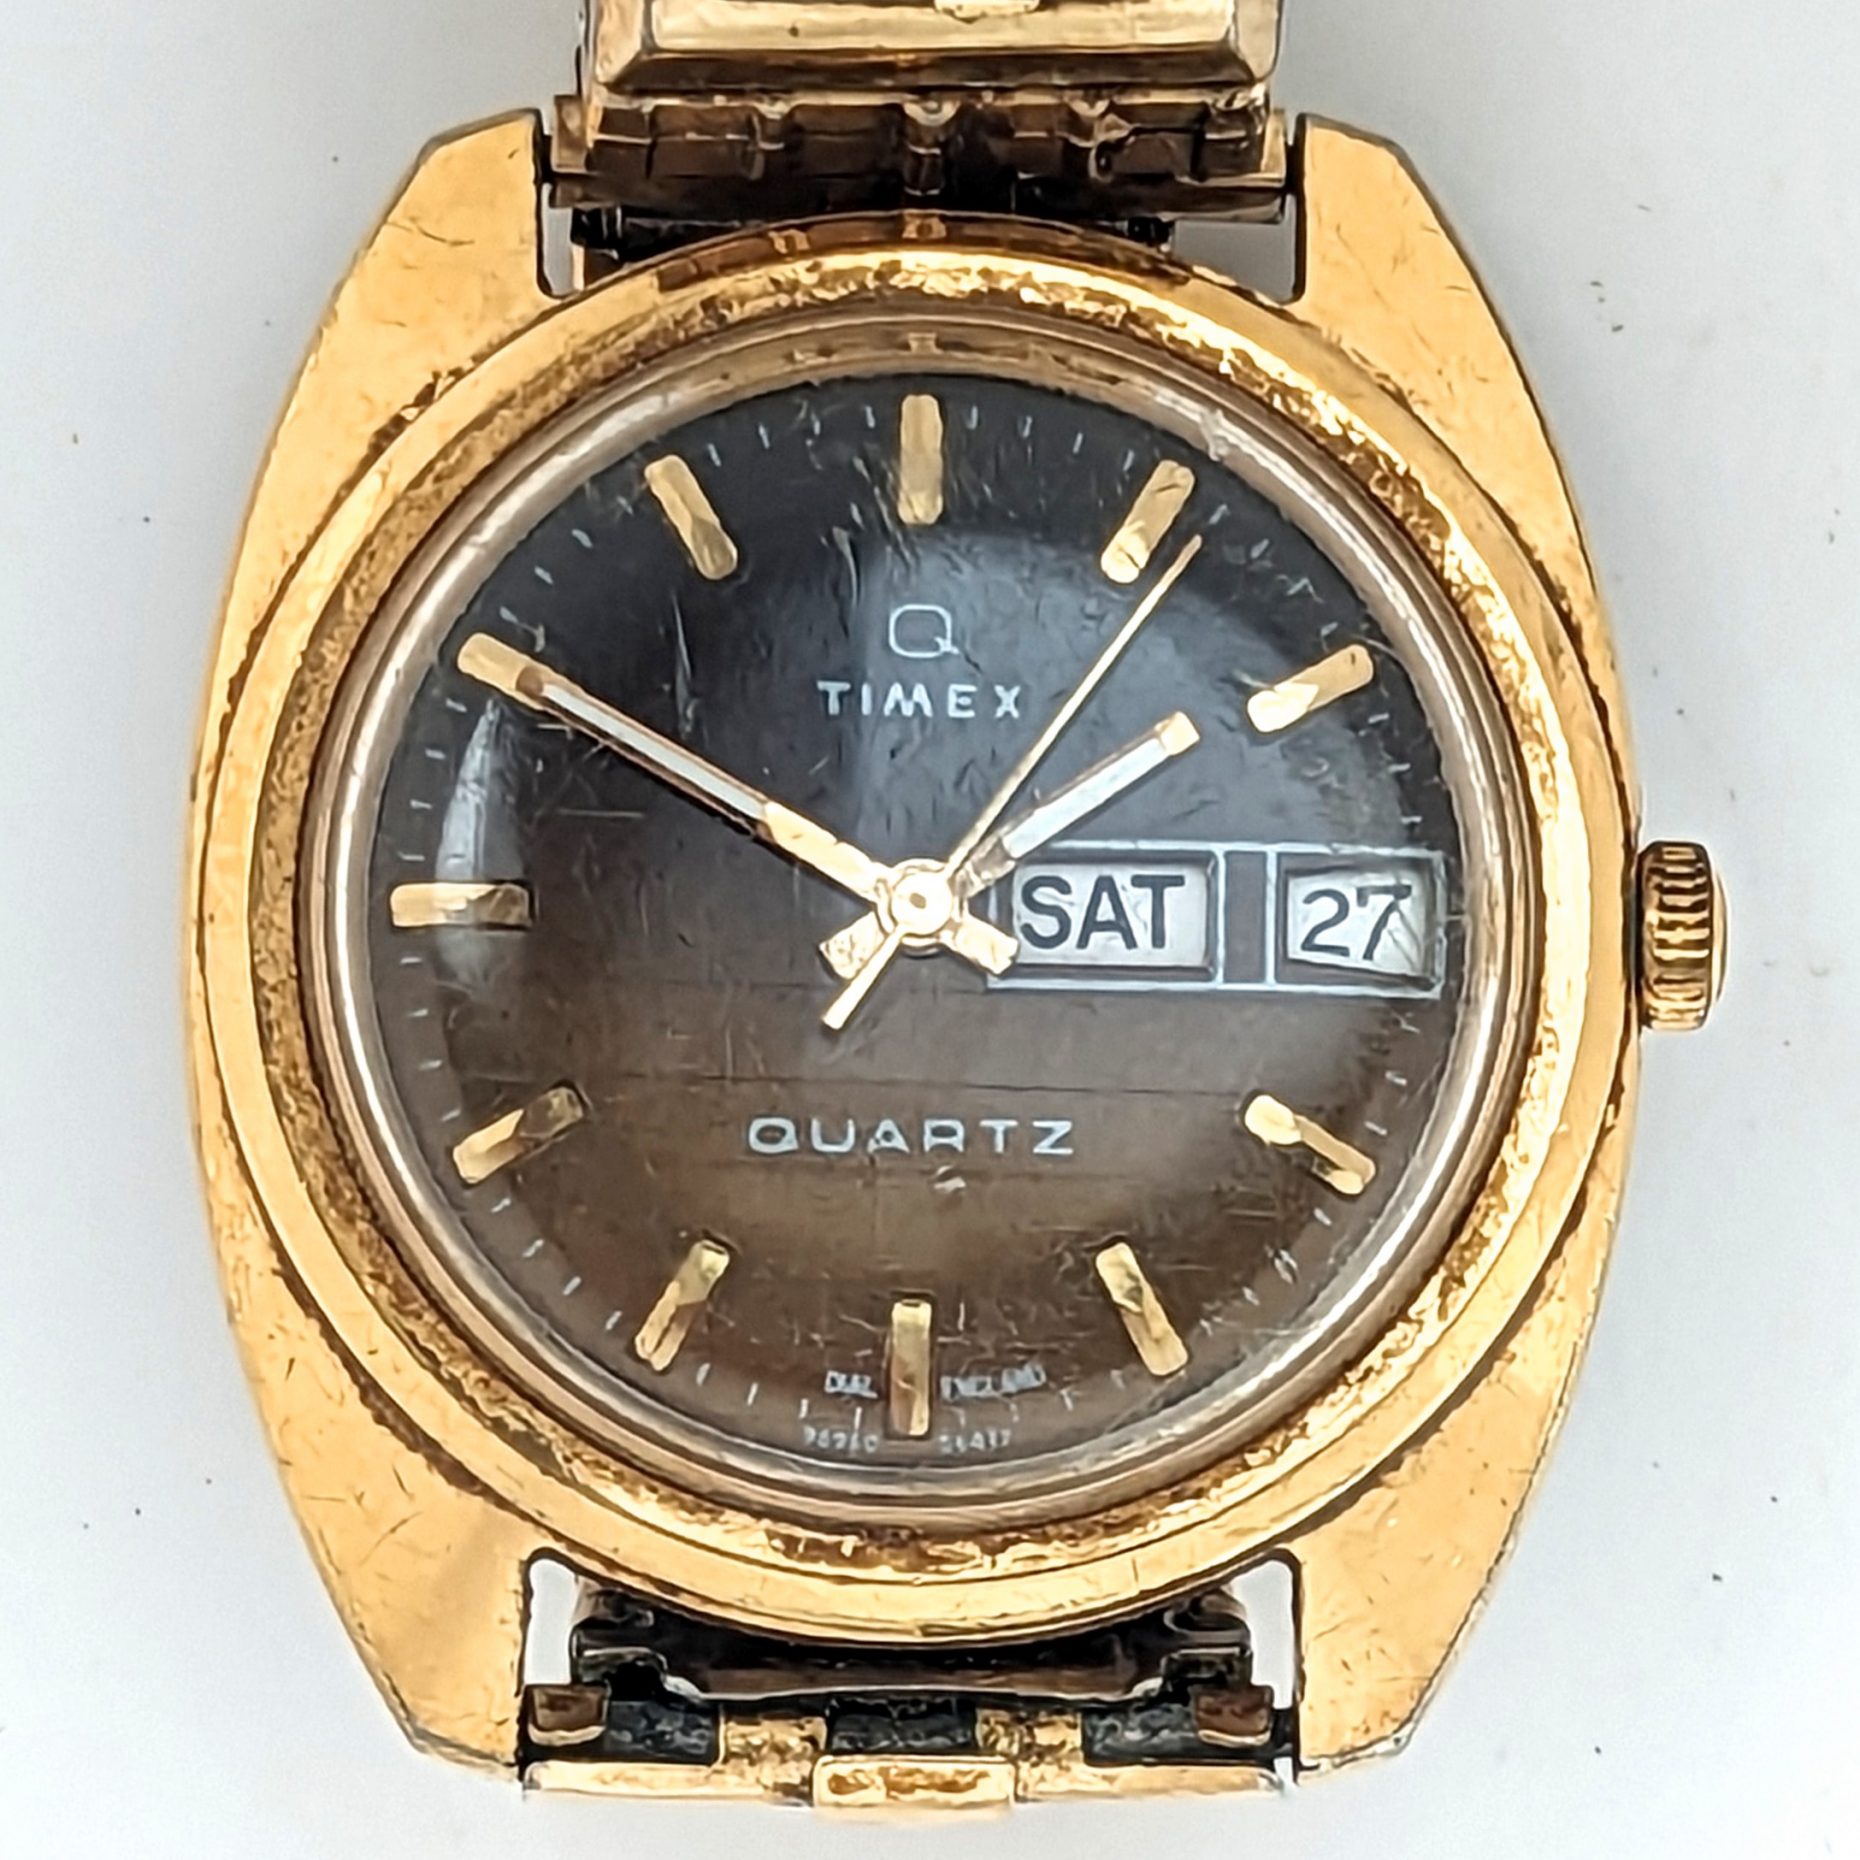 Timex Q 96960 xx77 [1977] Quartz